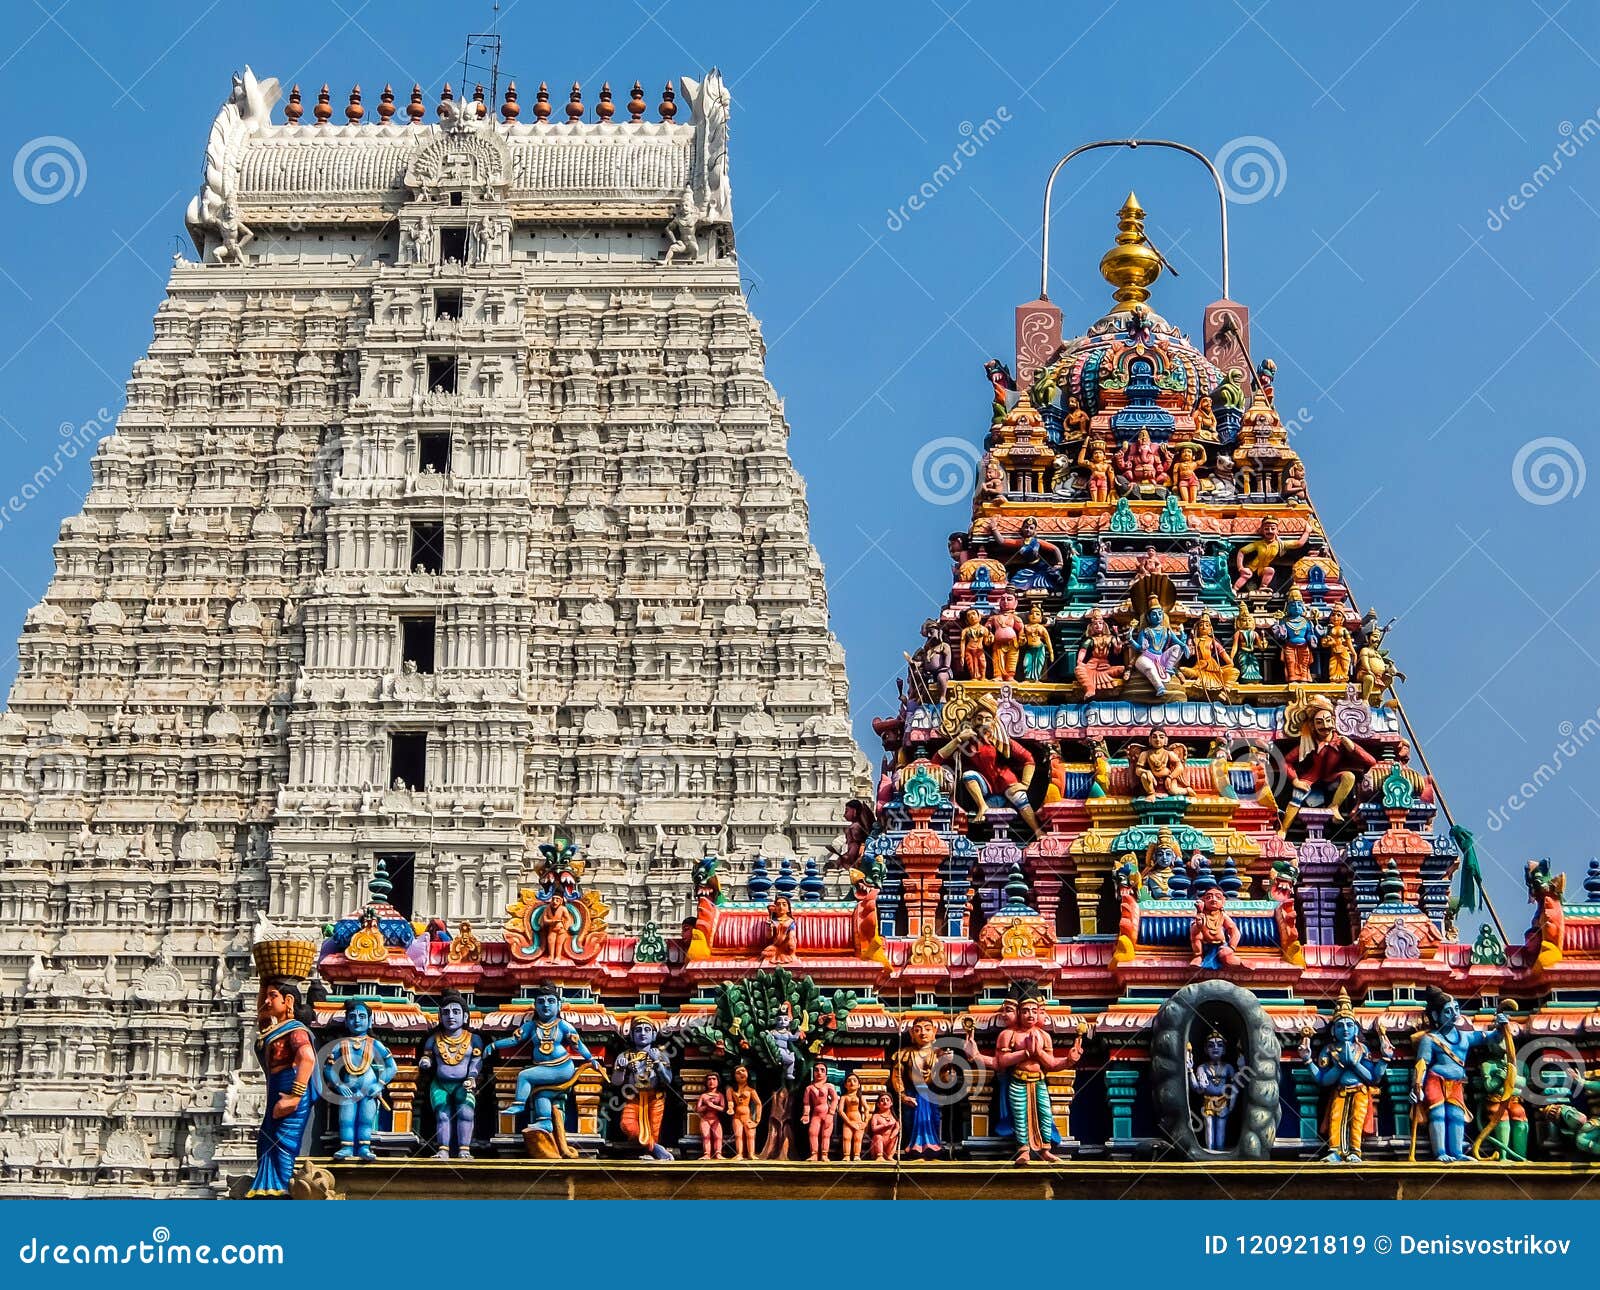 Architecture of Annamalaiyar Temple in Tiruvannamalai, India ...